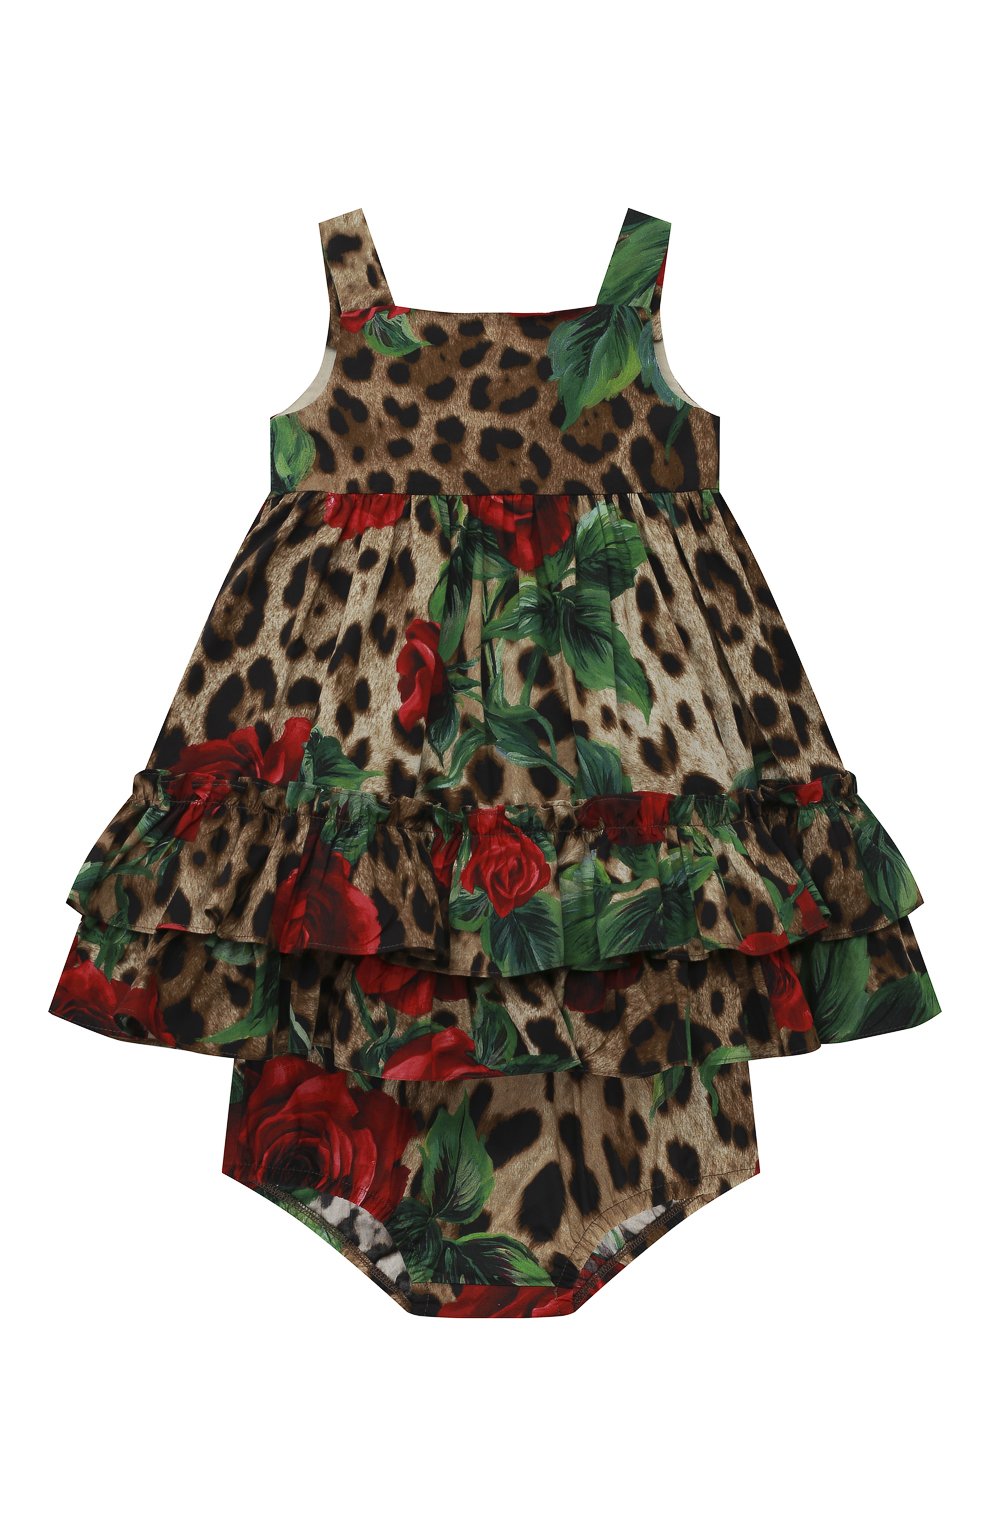 Платье с шортами DOLCE & GABBANA женский разноцветного цвета — купить в интернет-магазине ЦУМ, арт. L21DF6/HS5CM/0UTLET AW22-23